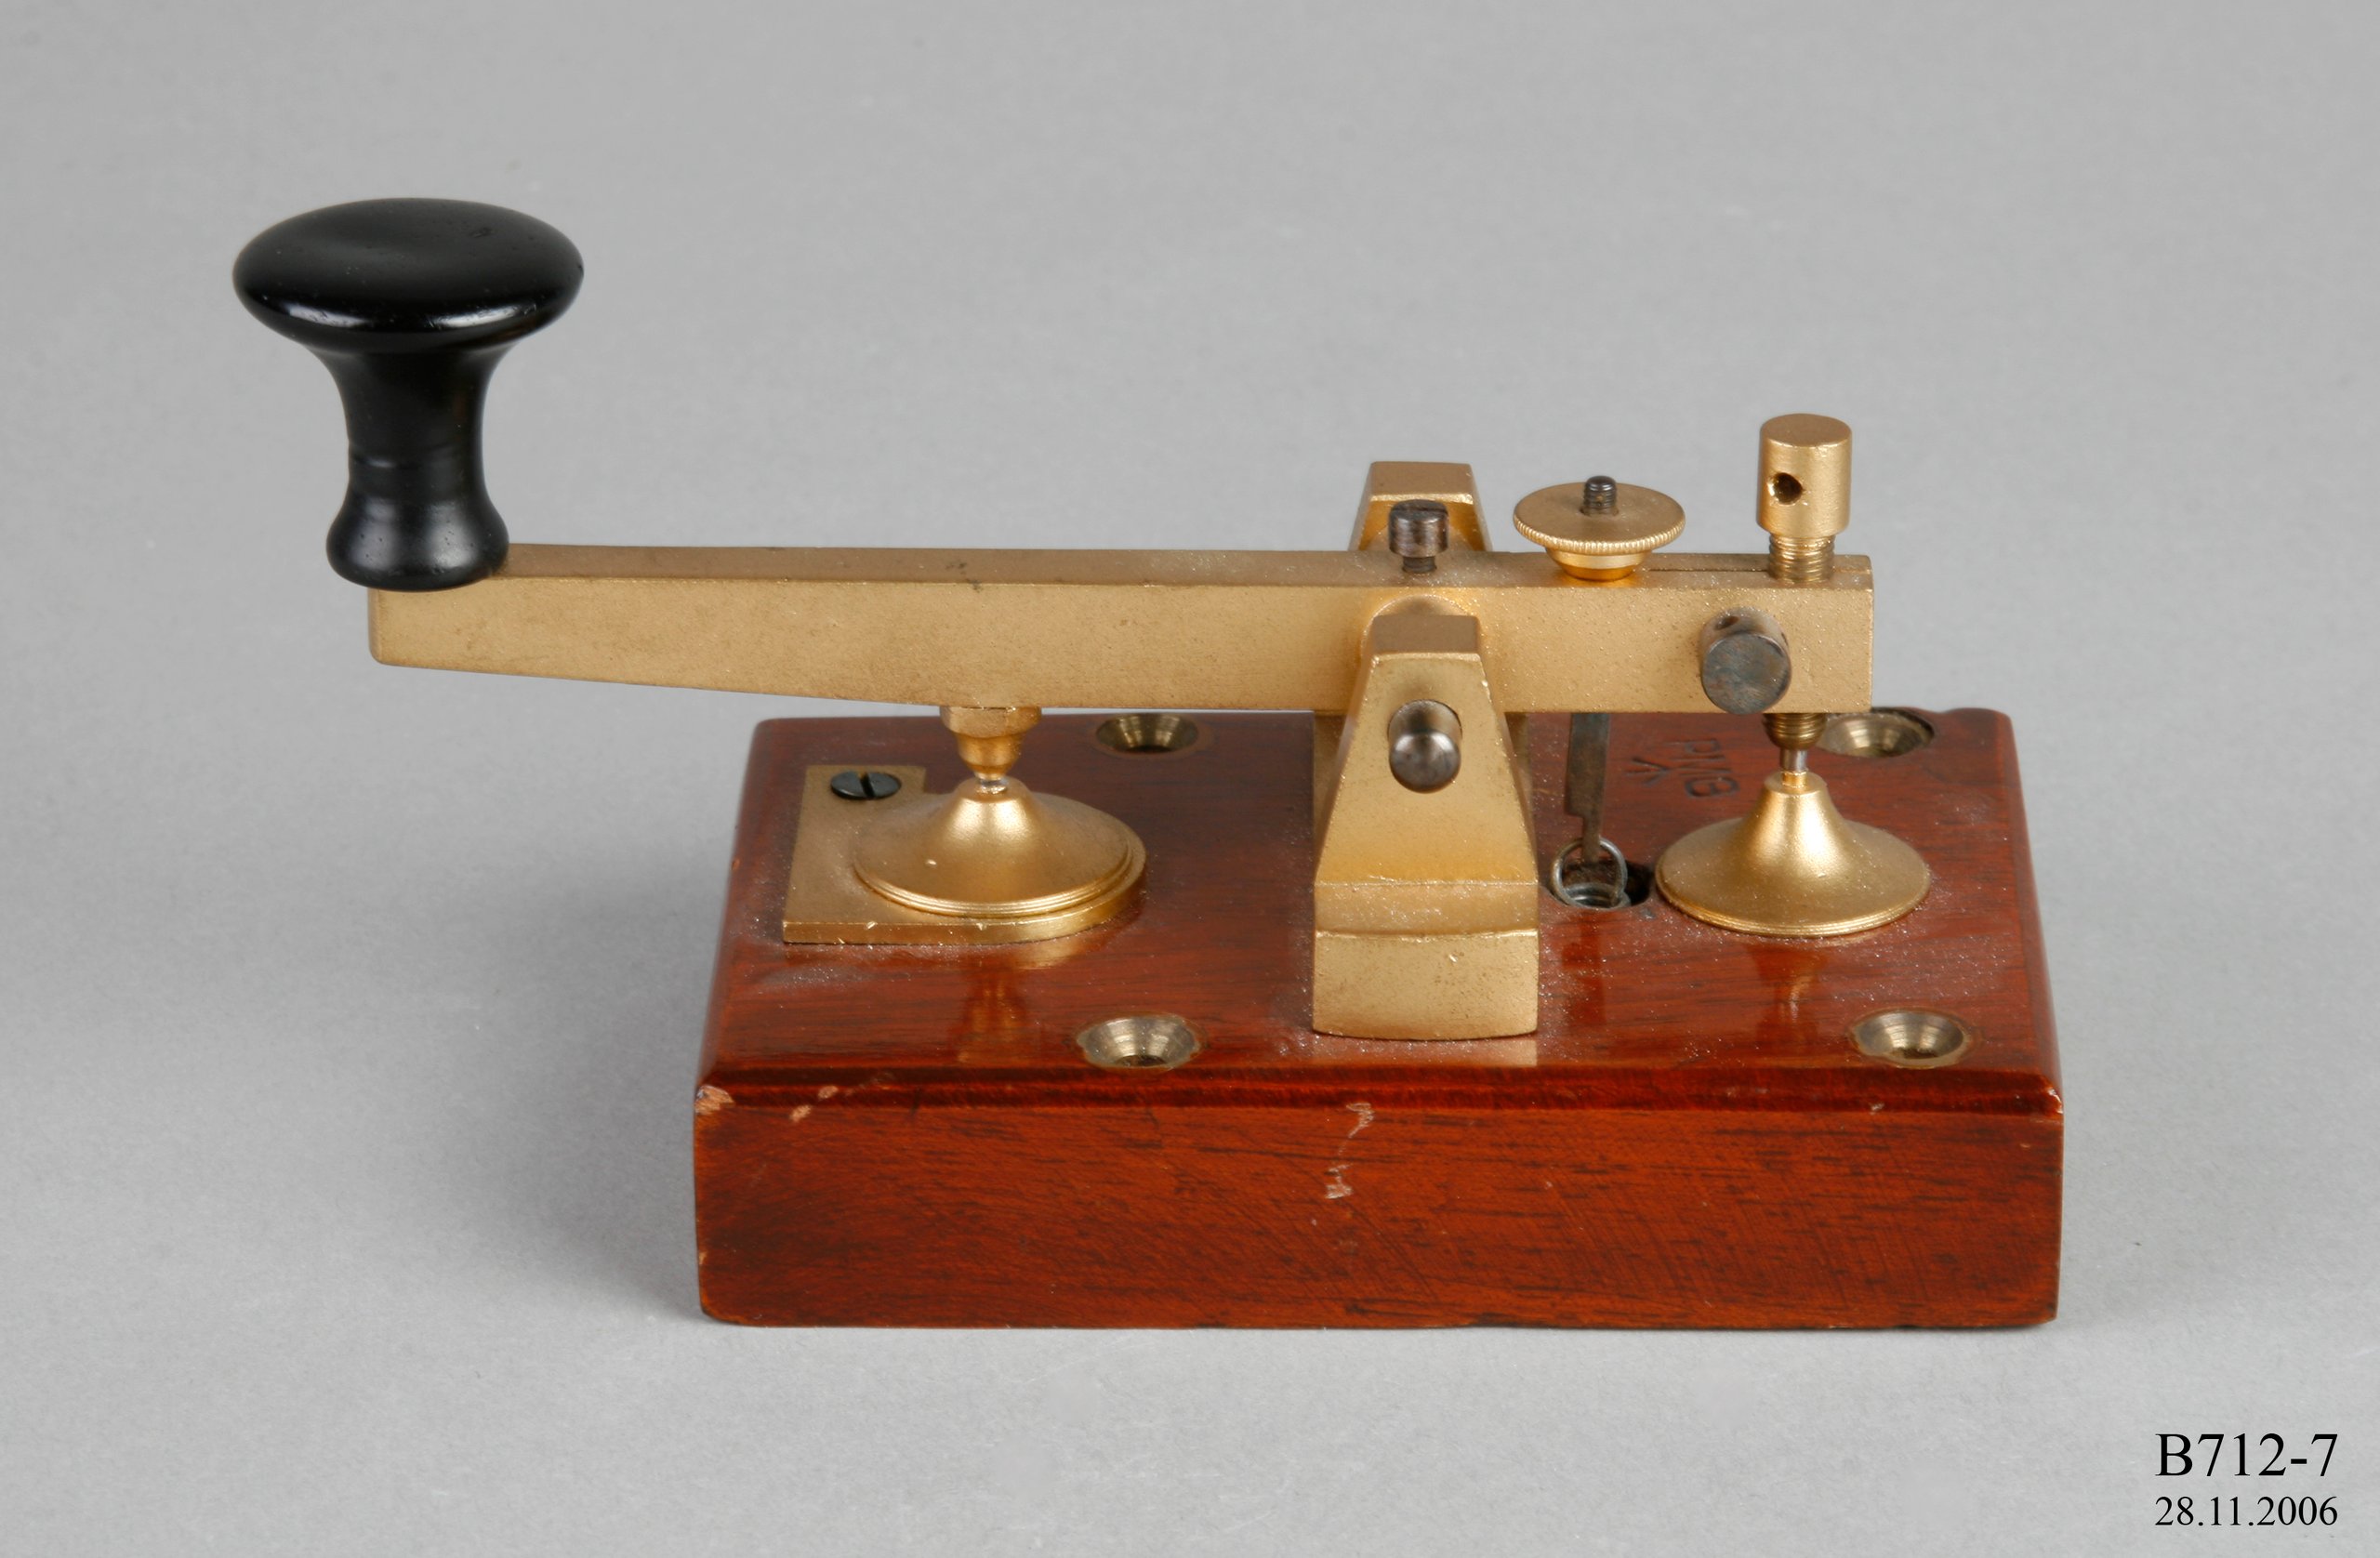 An electric telegraph key